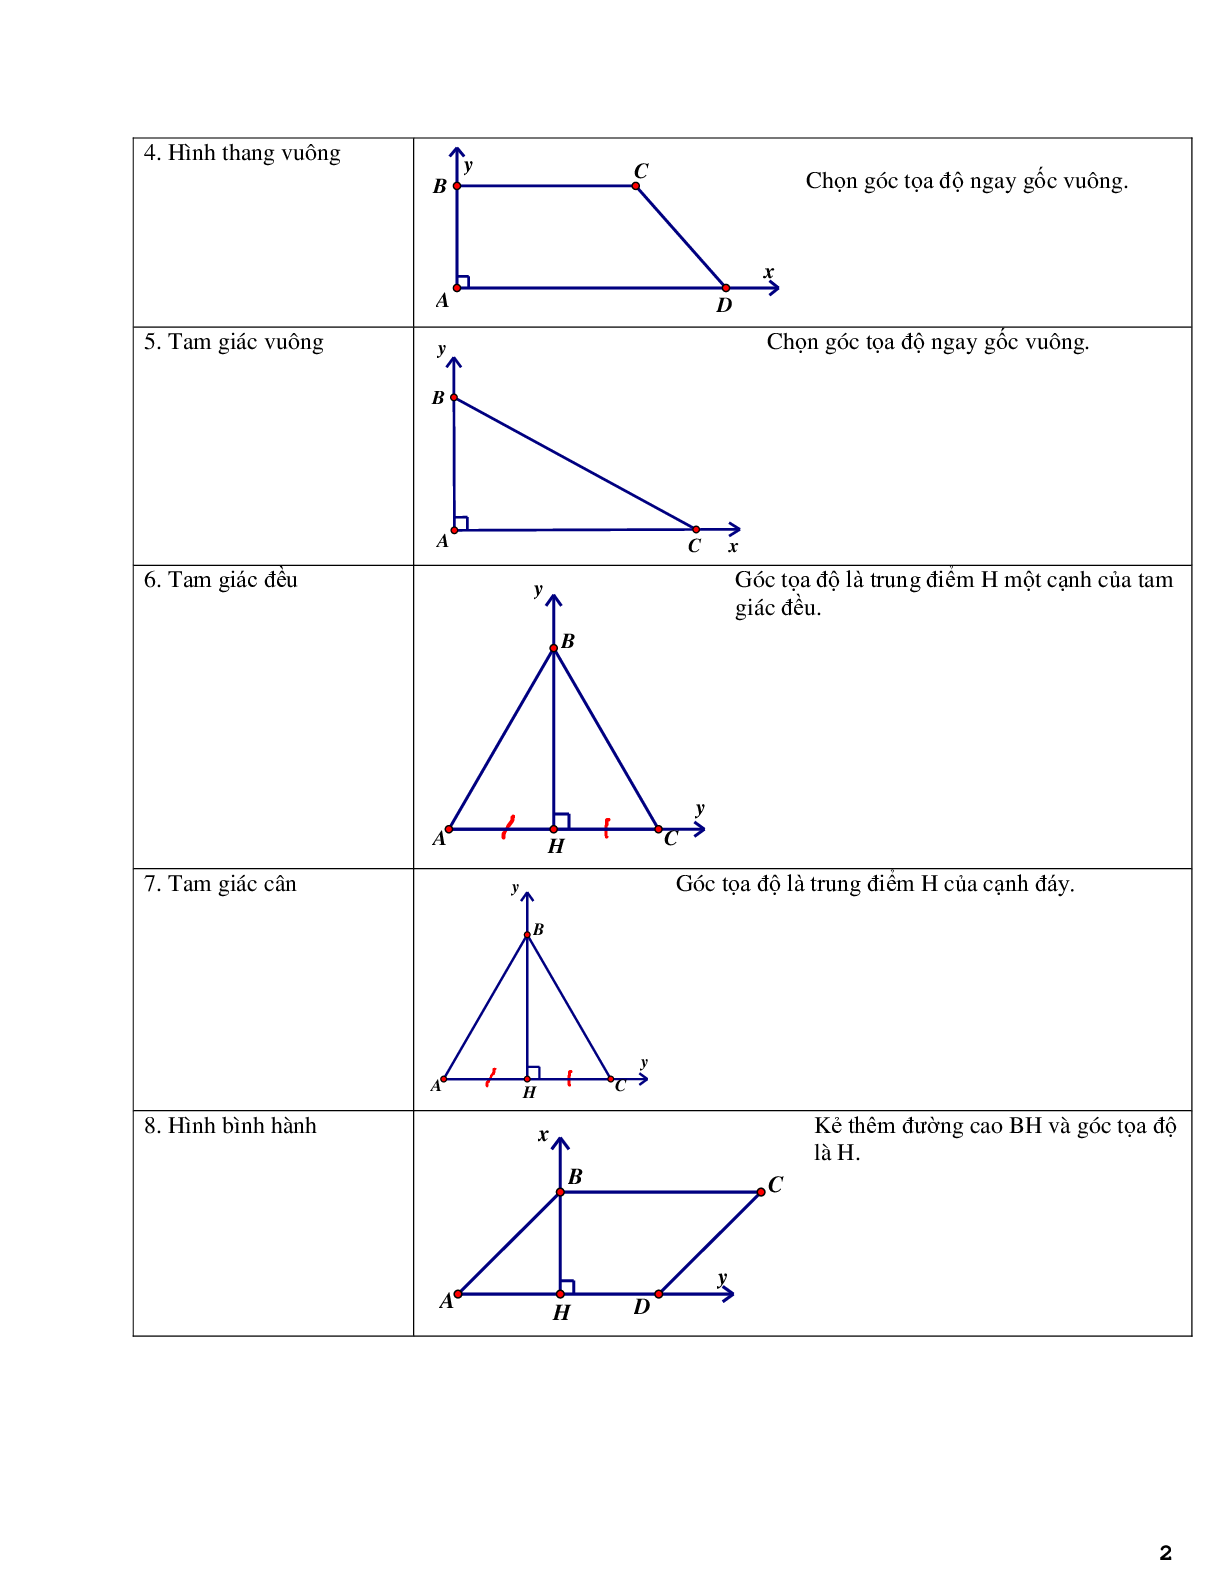 Phương pháp tọa độ hóa bài toán hình học không gian - phần 2 (trang 2)